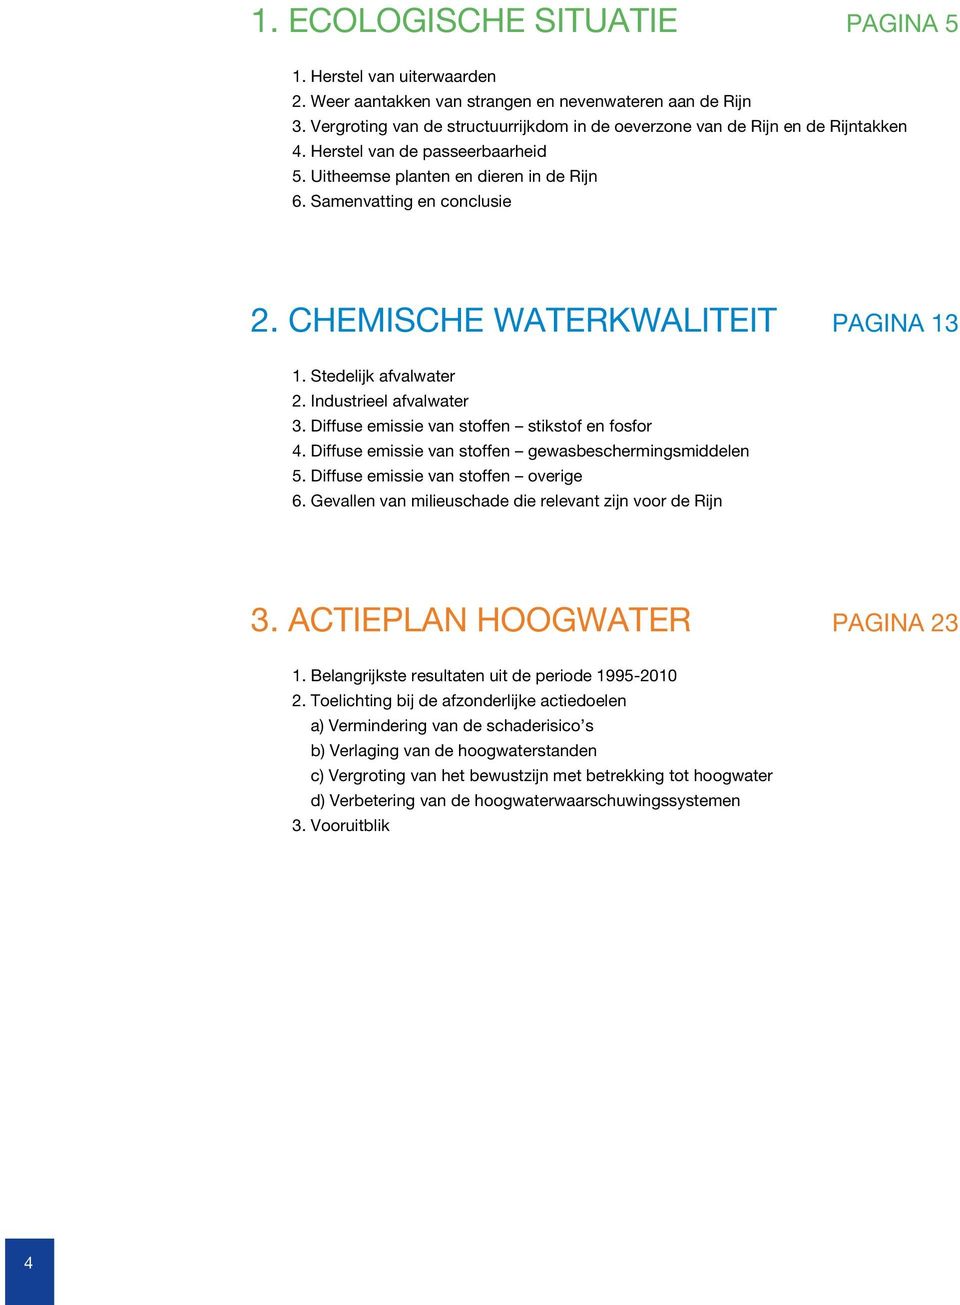 Chemische waterkwaliteit PAGINA 13 1. Stedelijk afvalwater 2. Industrieel afvalwater 3. Diffuse emissie van stoffen stikstof en fosfor 4. Diffuse emissie van stoffen gewasbeschermingsmiddelen 5.